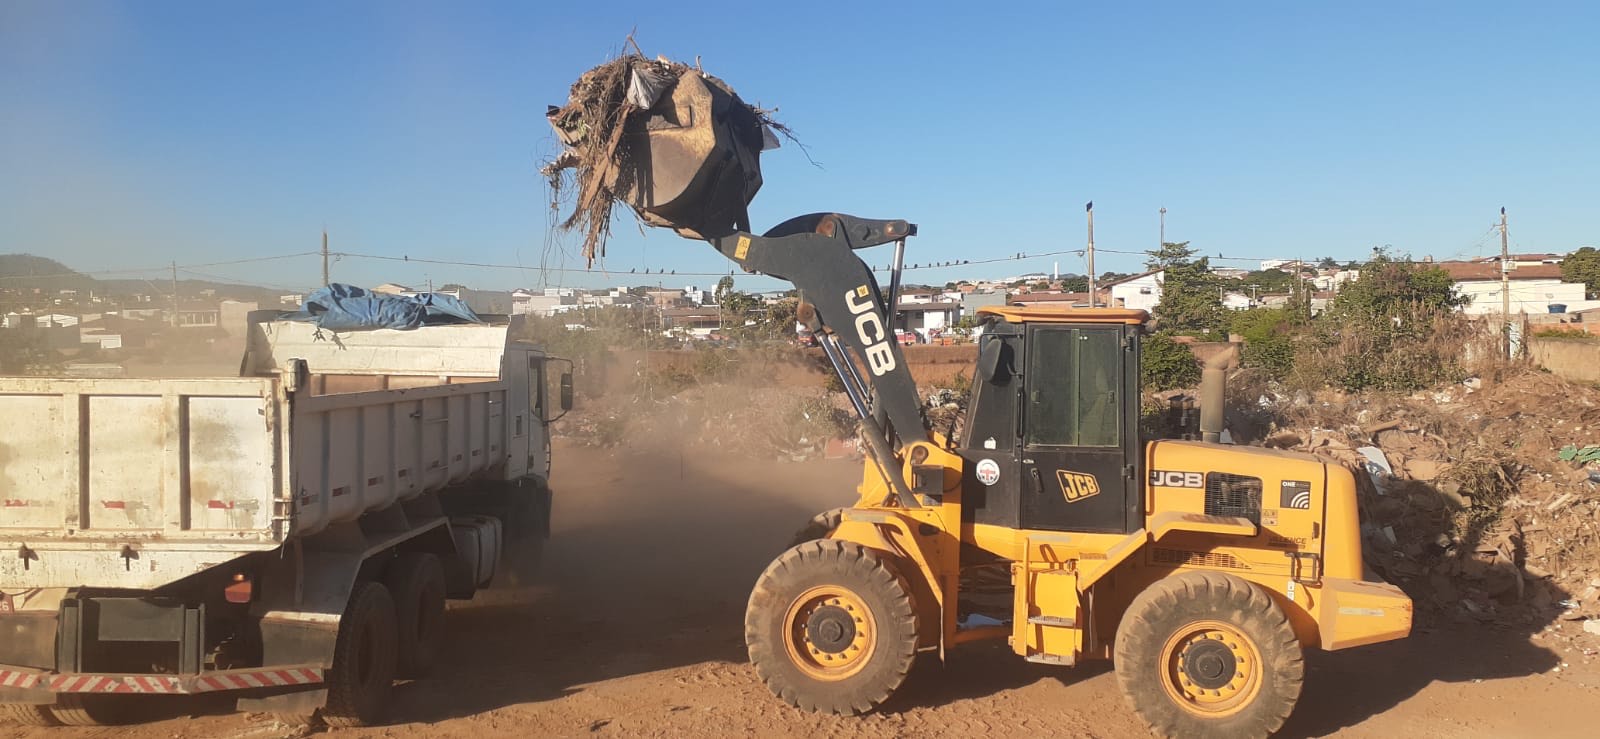 LIMPEZA PESADA | Prefeitura intensifica coleta de descartes irregulares por toda a cidade